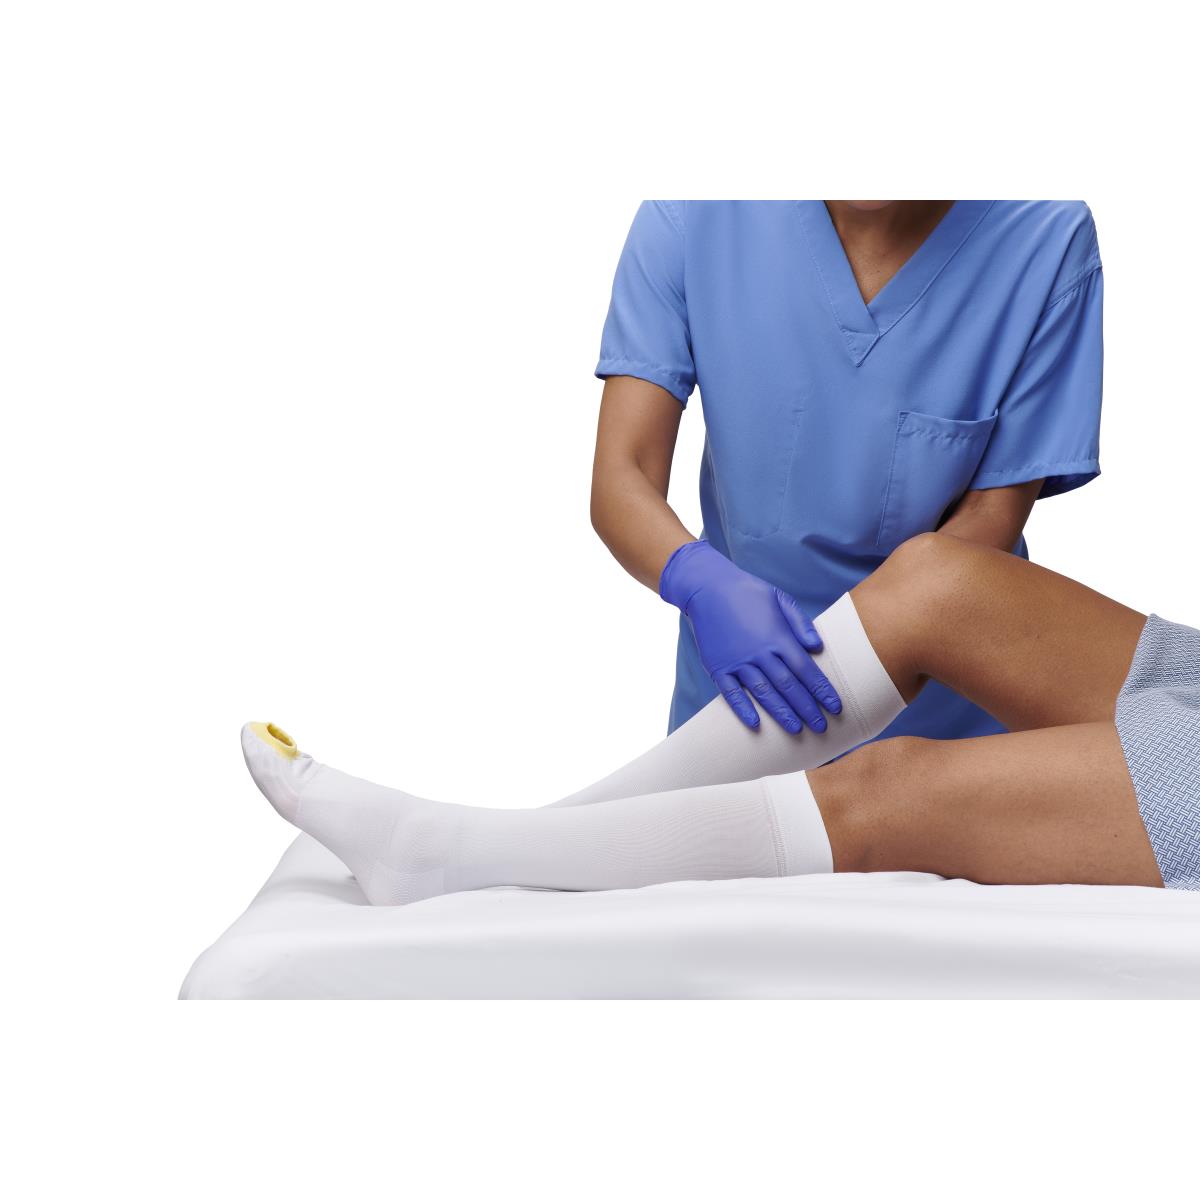 Knee Length Anti-Embolism Stocking, Extra-Large – Affinity Home